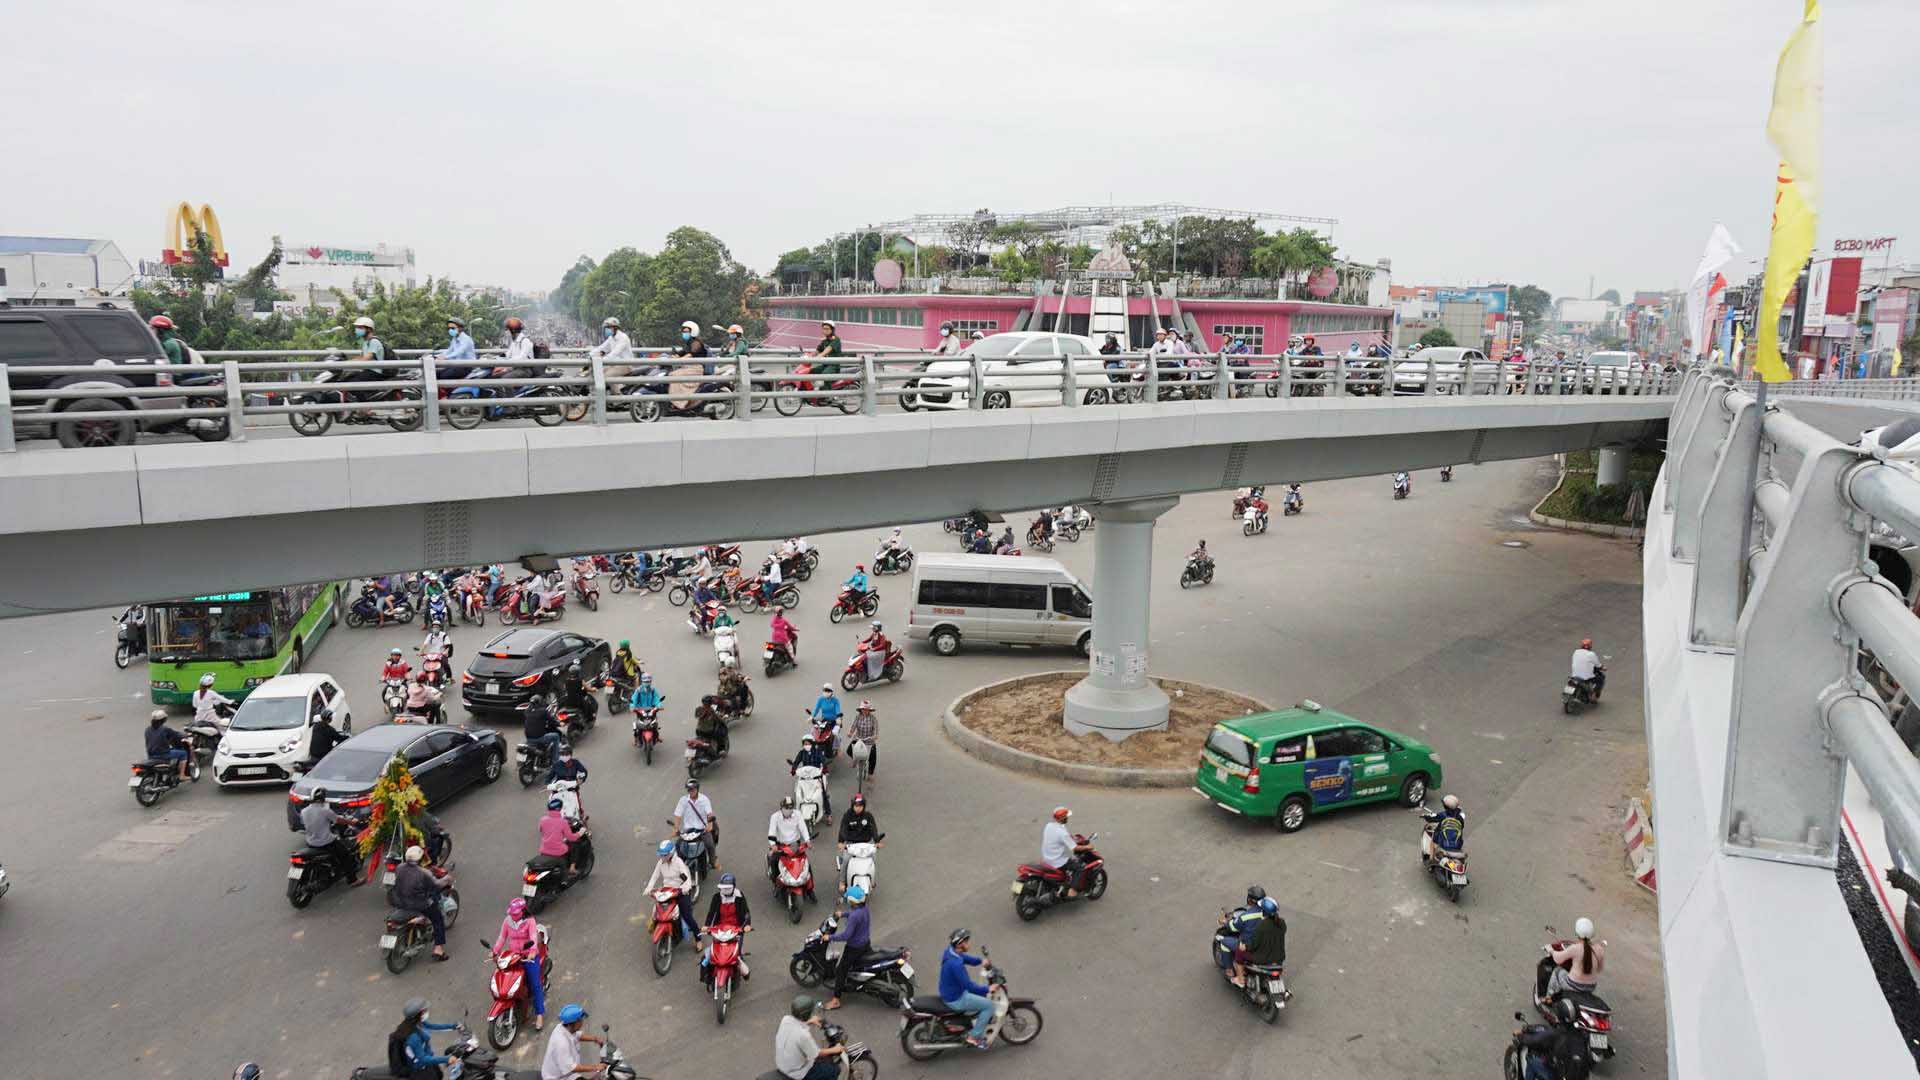 cầu vượt thép,cầu vượt chữ y,cầu vượt 400 tỷ,điểm đen ùn tắc,cửa ngõ Sài Gòn,xóa ùn tắc Sài Gòn,ùn tắc giao thông